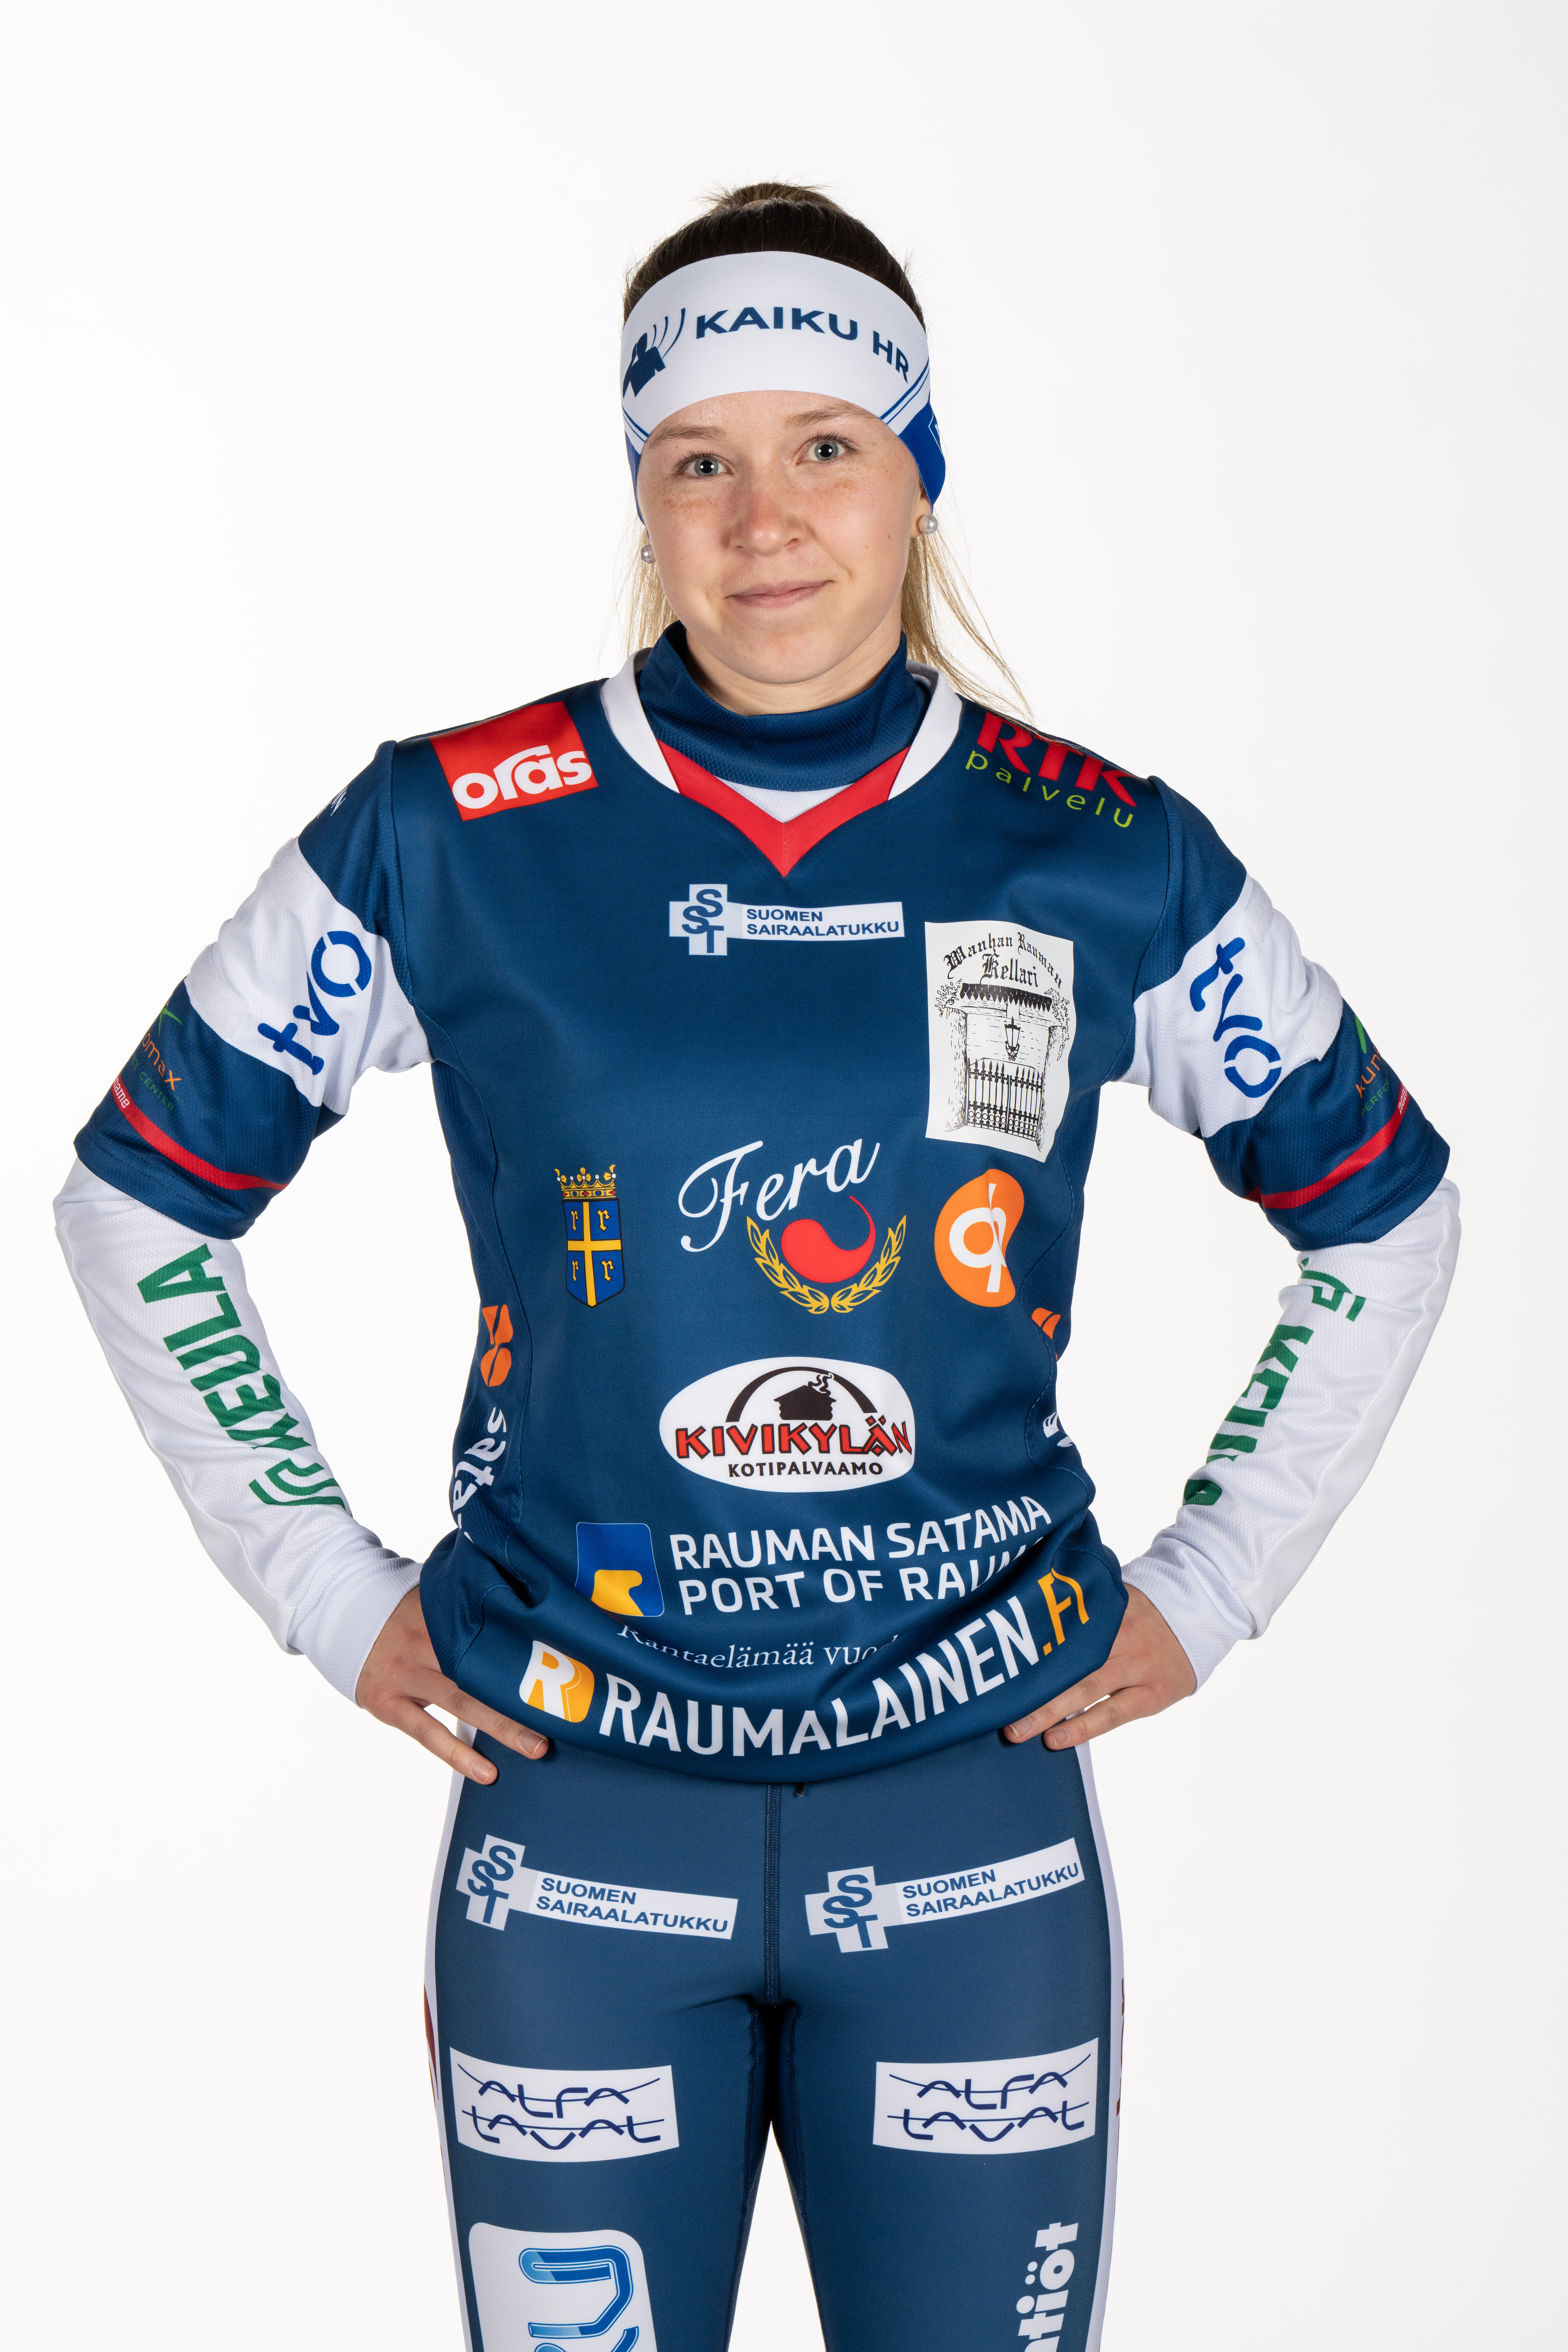 Alina Rosendahl